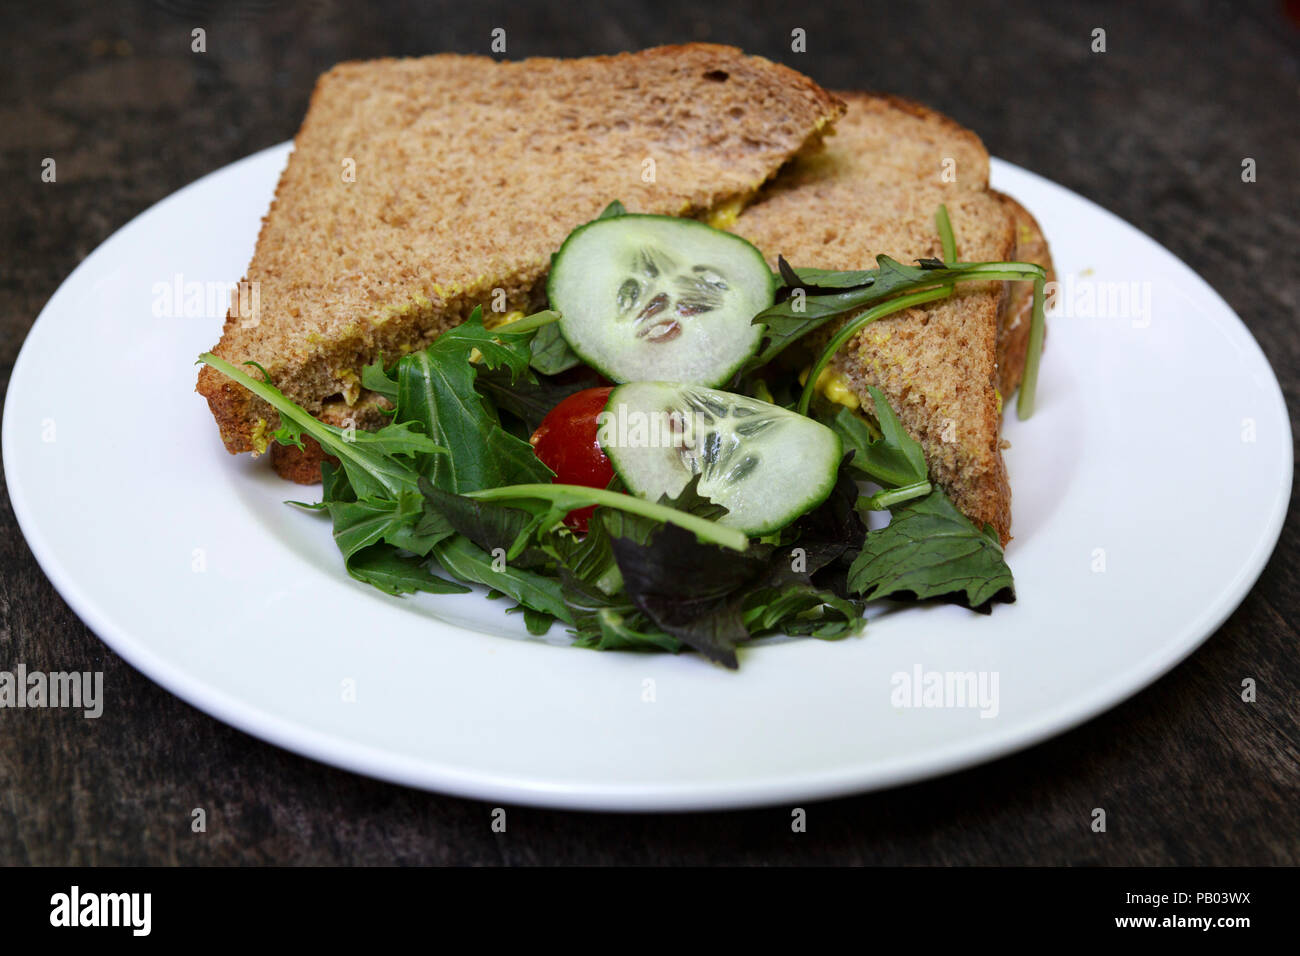 Ein vollkorn Sandwich serviert mit einem kleinen Salat. Sandwiches sind eine beliebte Mittag essen im Vereinigten Königreich. Stockfoto